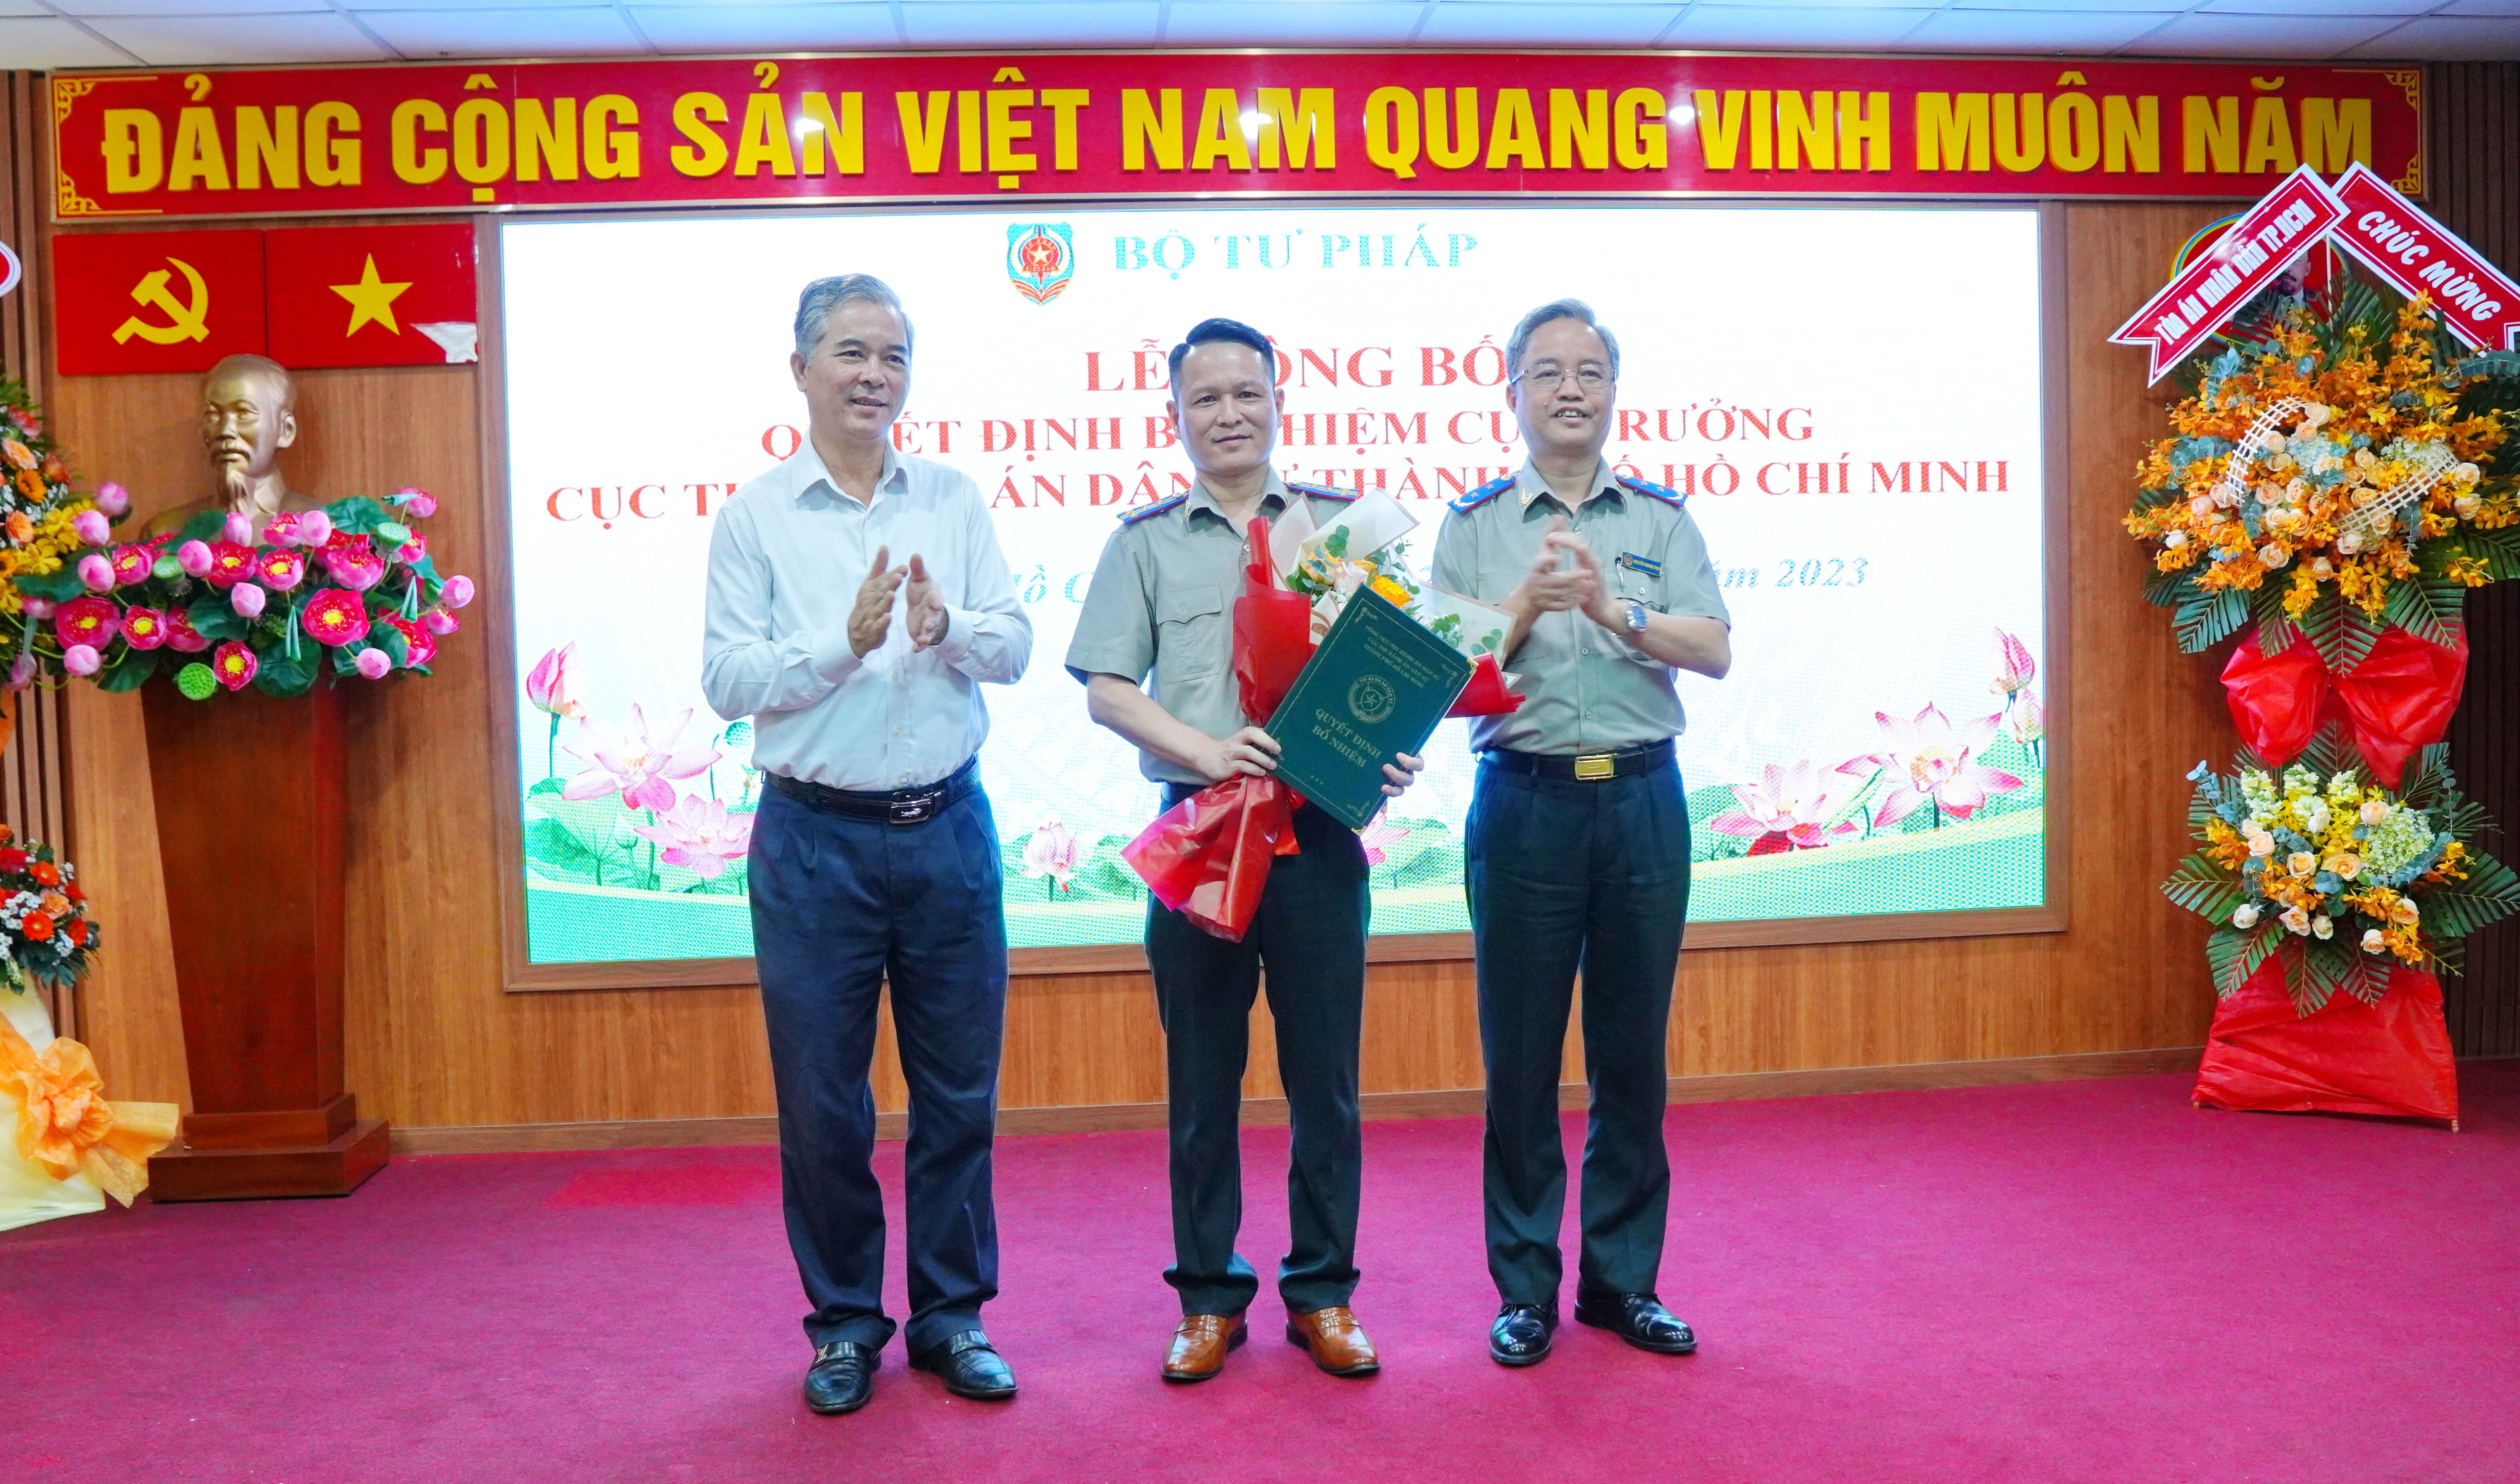 Bộ Tư pháp công bố và trao quyết định bổ nhiệm Cục trưởng Cục THADS Thành phố Hồ Chí Minh